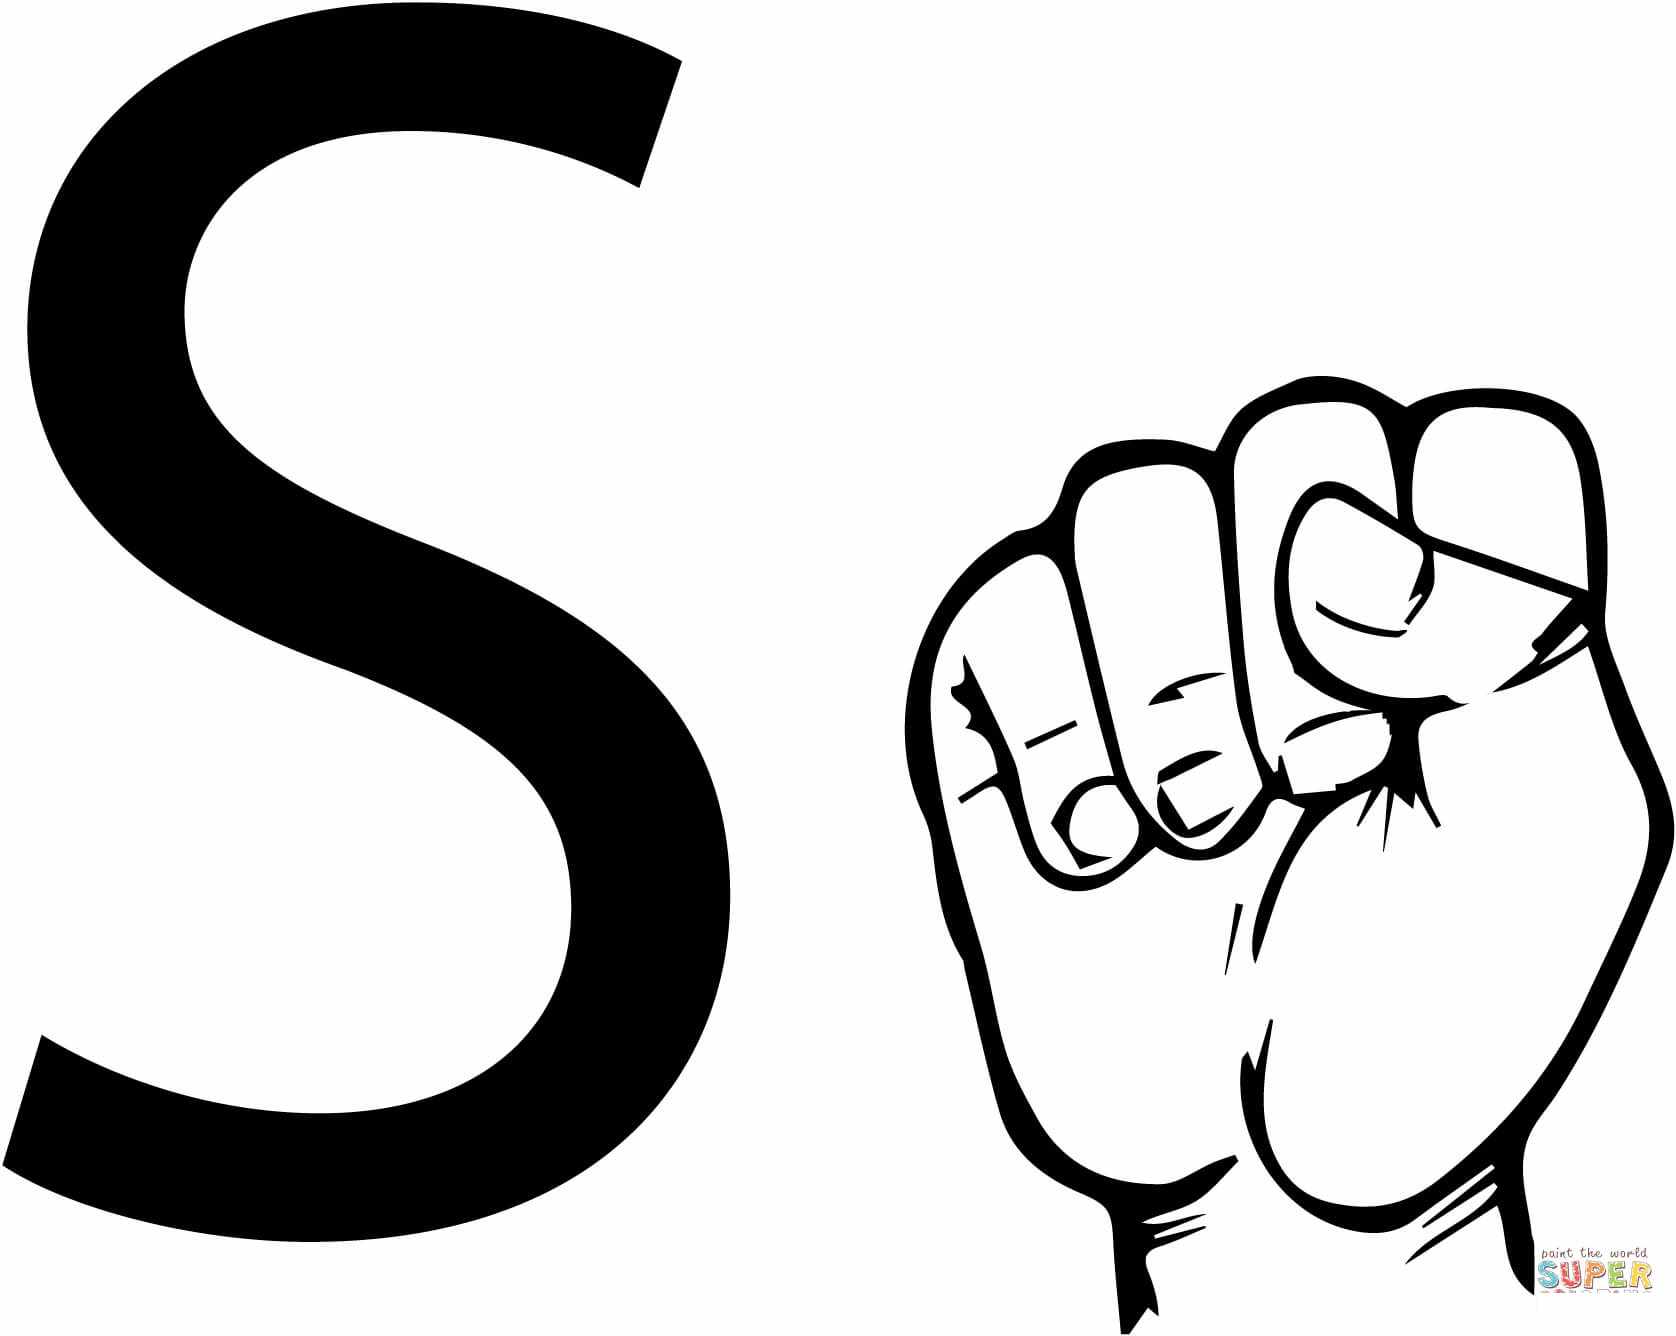 ASL-viittomakielikirje S